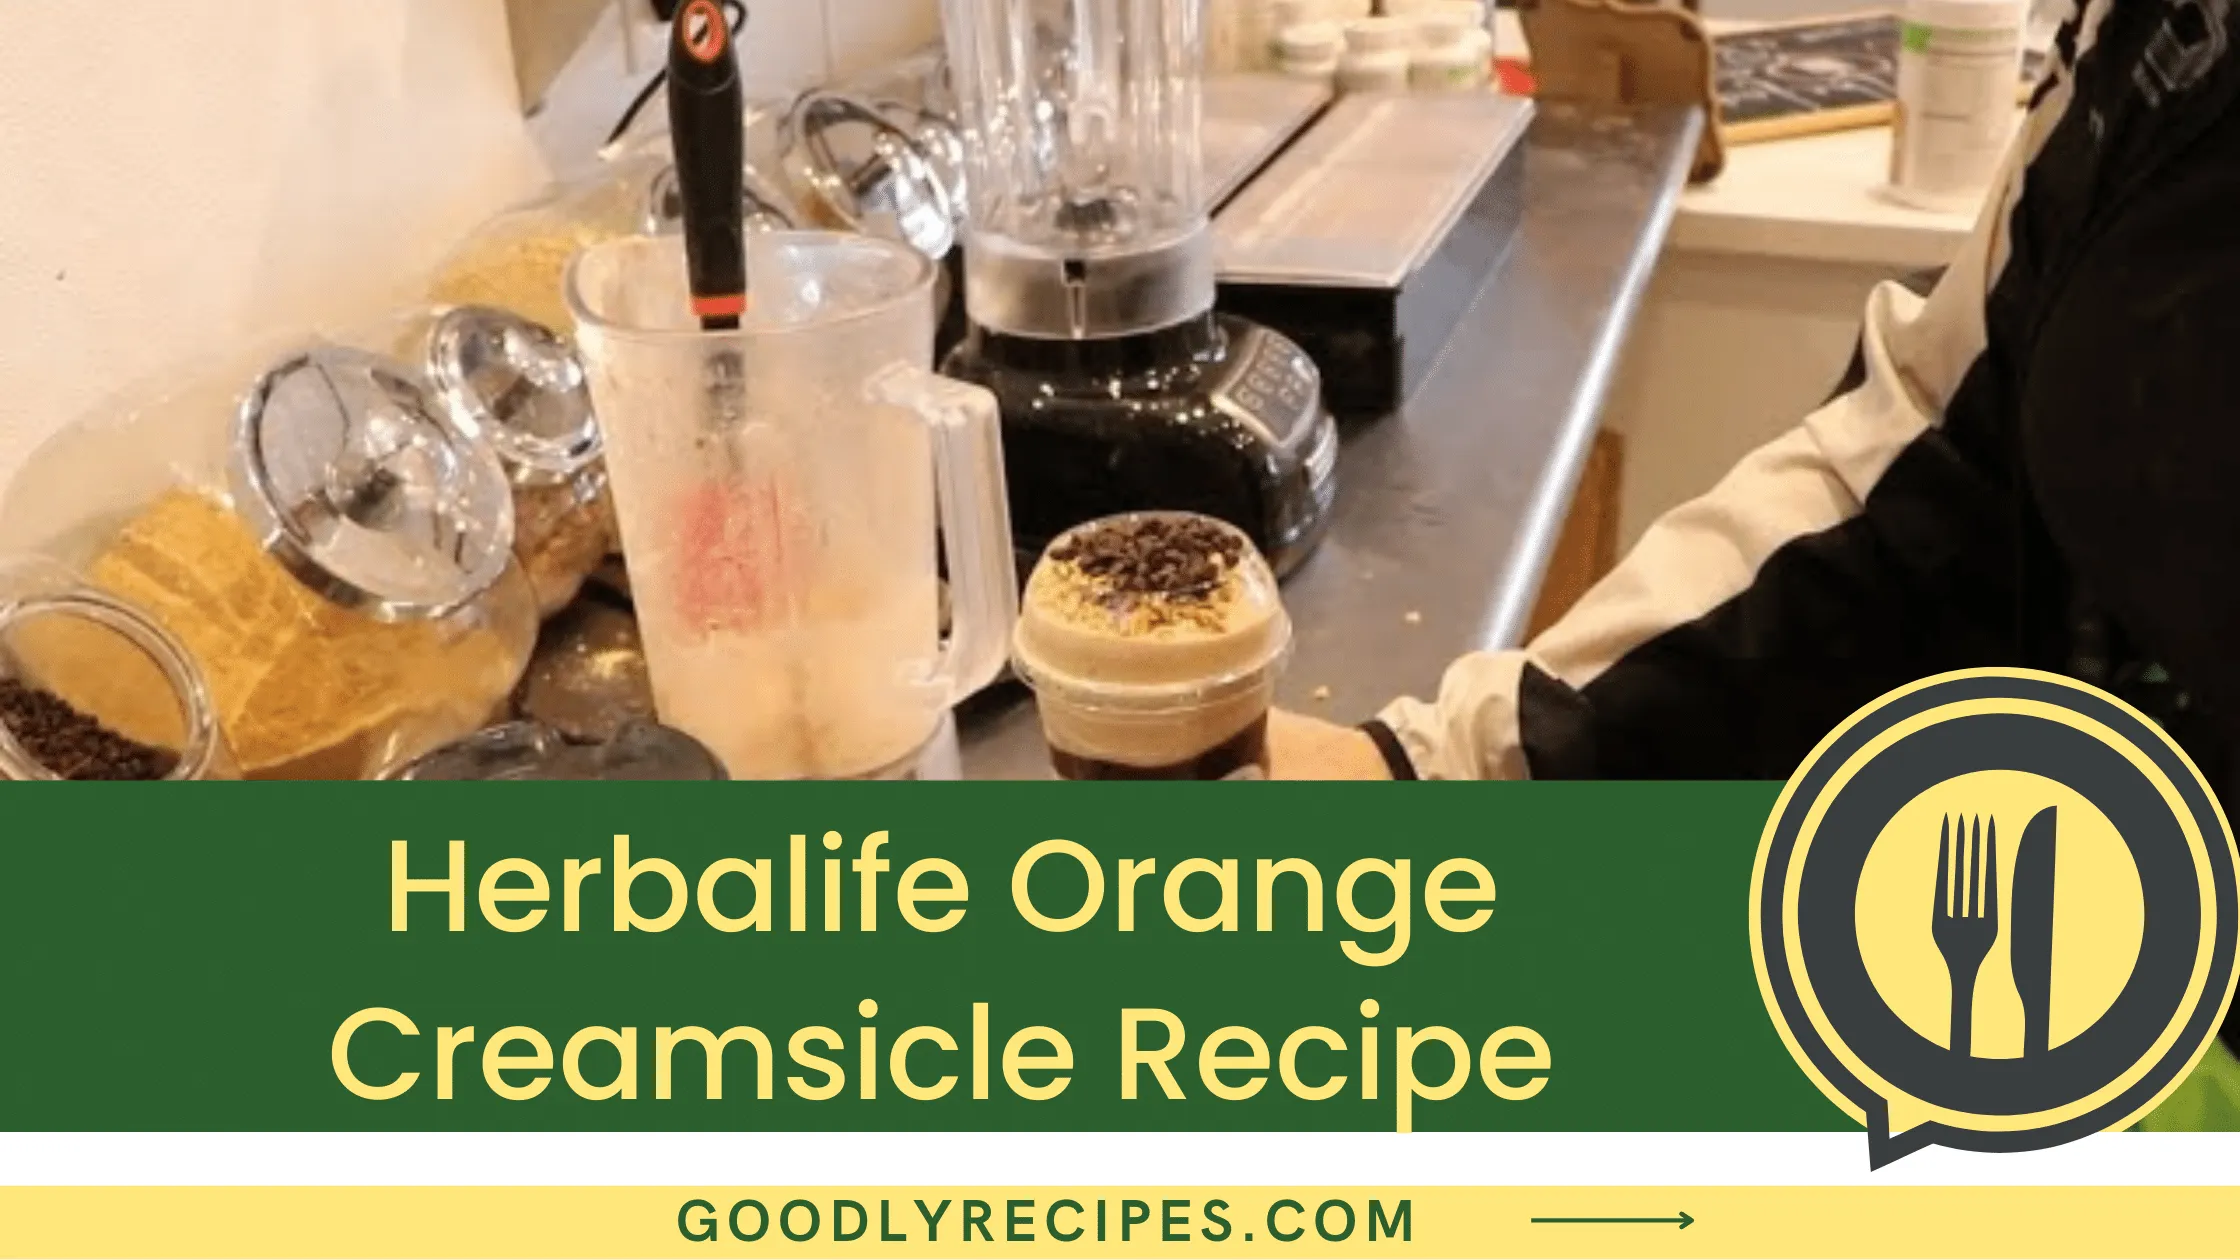 What is Herbalife Orange Creamsicle?